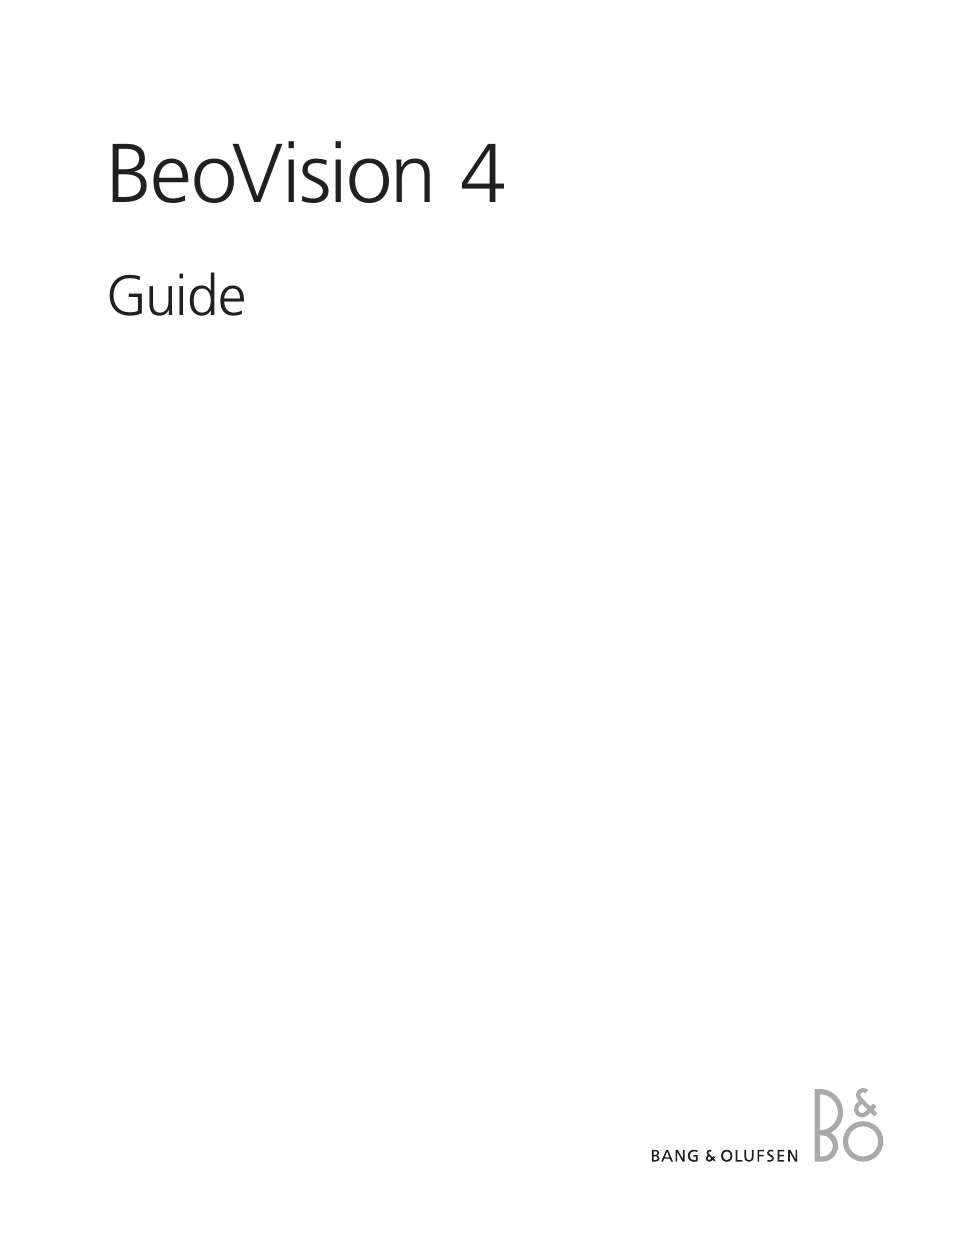 BeoVision 4-50/65